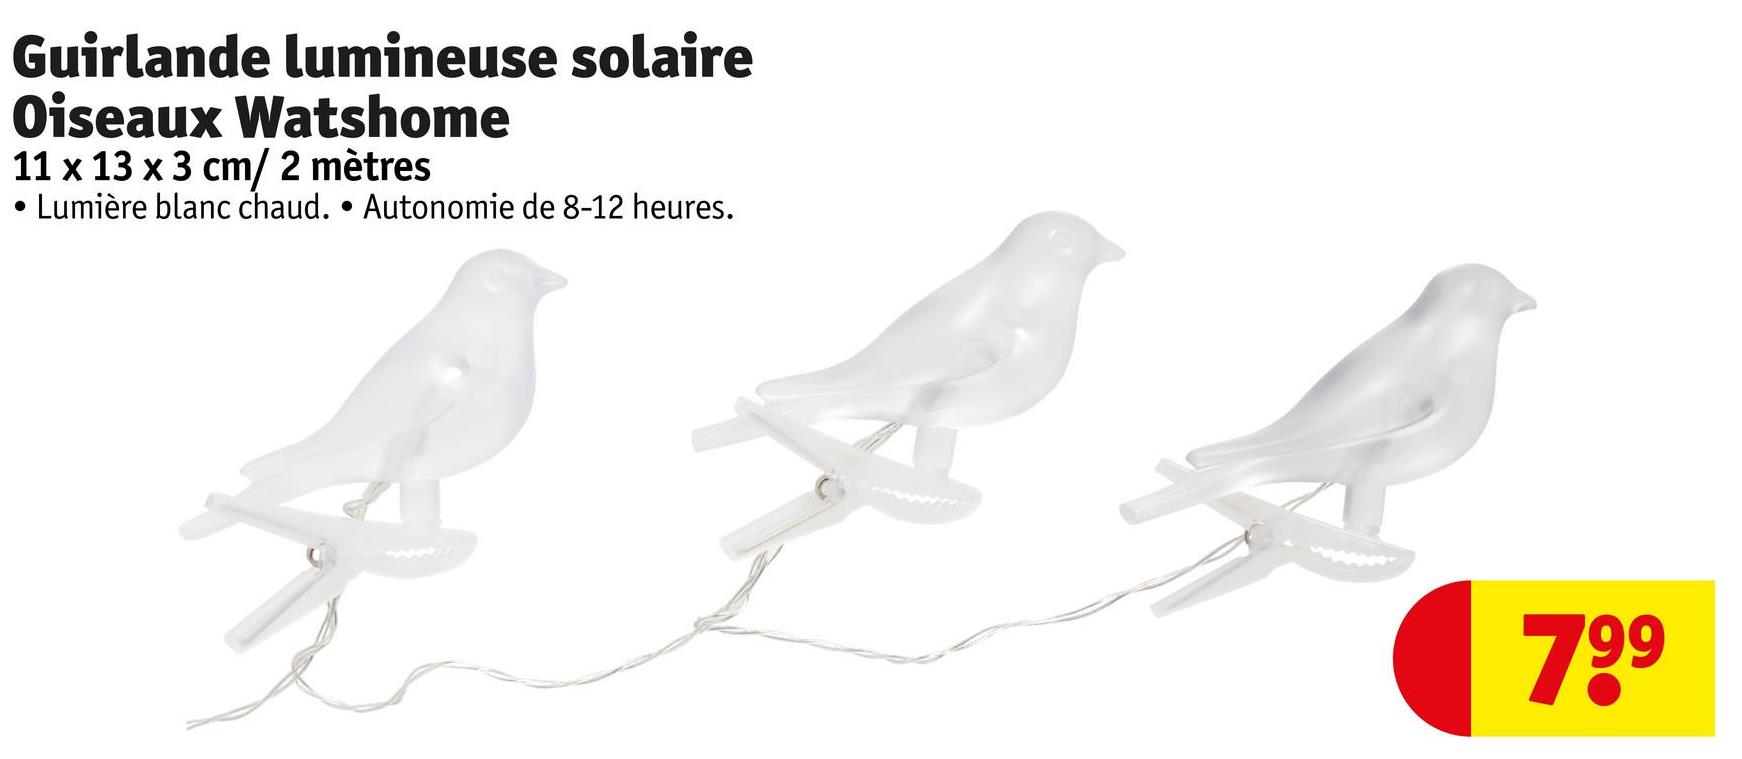 Guirlande lumineuse solaire
Oiseaux Watshome
11 x 13 x 3 cm/ 2 mètres
·
Lumière blanc chaud. • Autonomie de 8-12 heures.
799